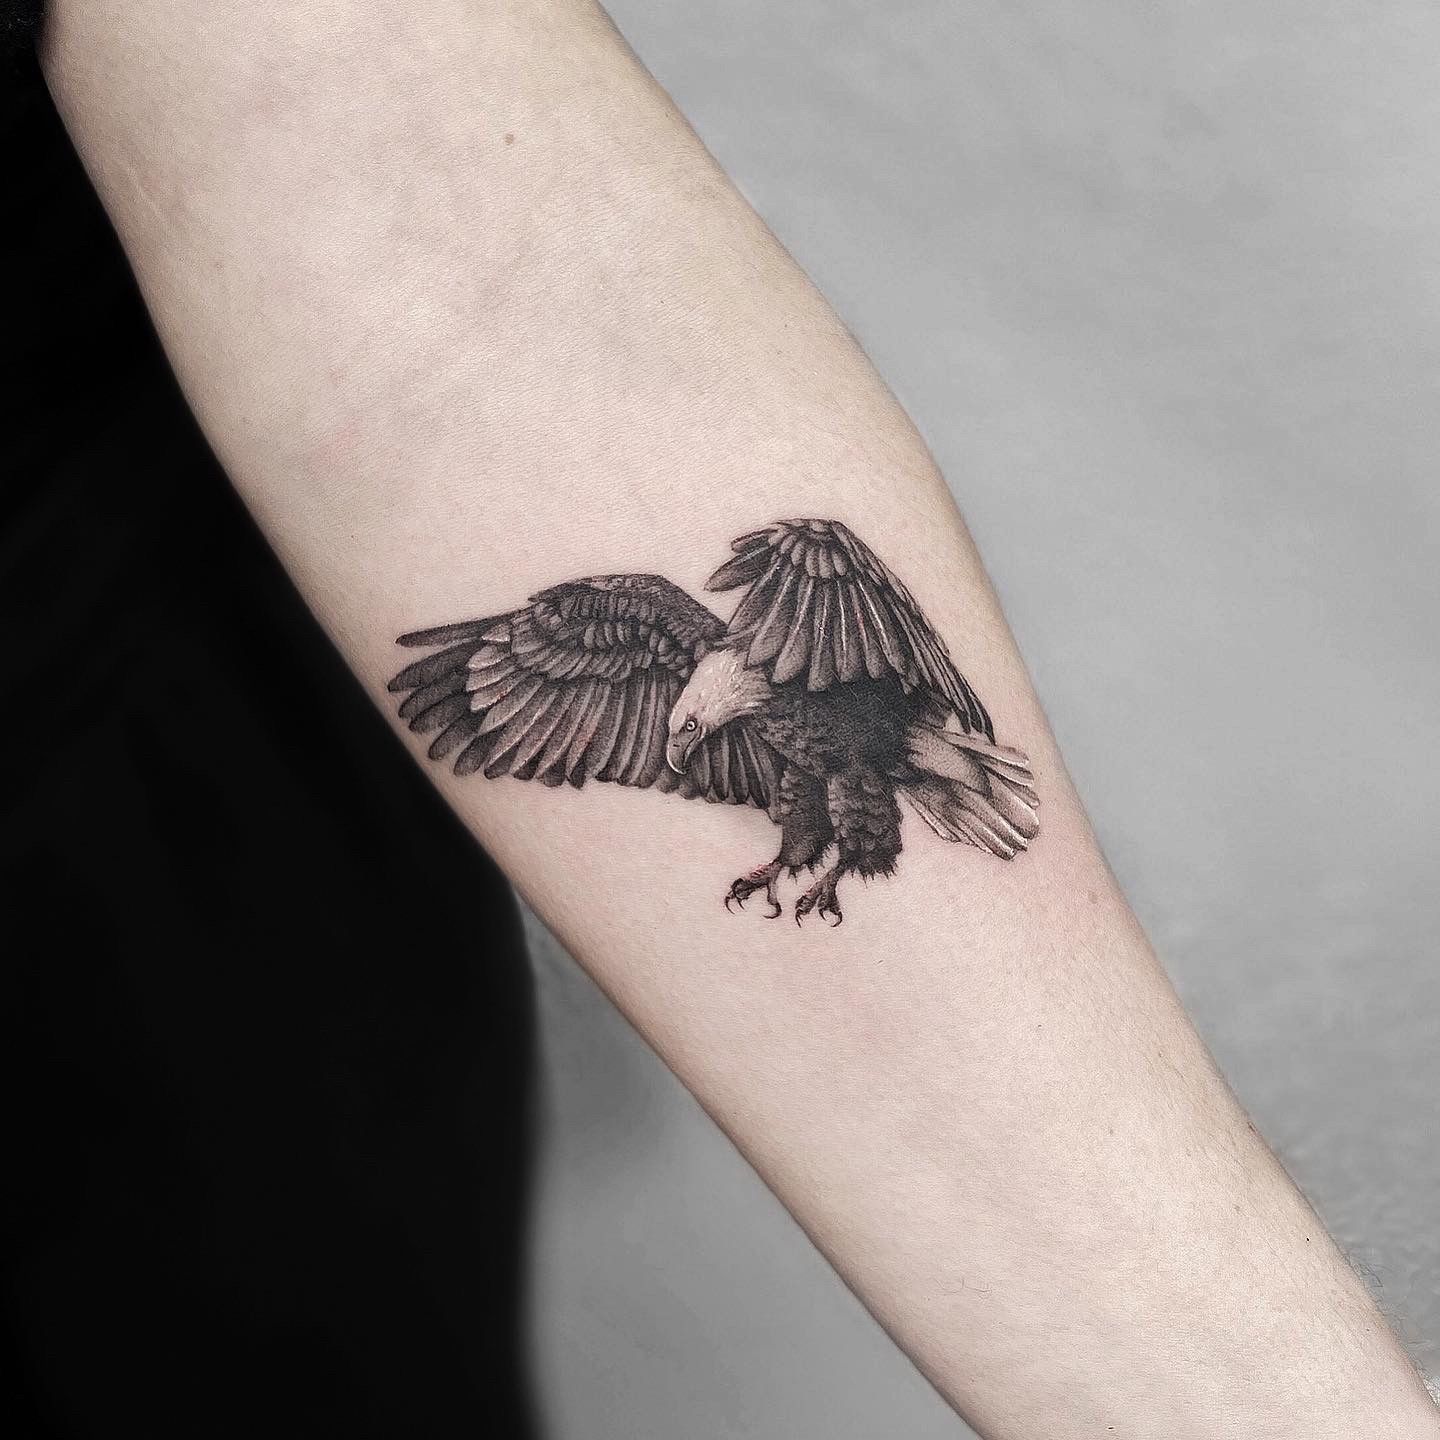 LagoNero Tattoo - 🦅🦅 A Q U I L A 🦅🦅 #eagle #eagletattoo #eagles #aquila  #nature #darktattoo #realistictattoo #tattooideas #tattooart #tattooartist  #tattoodesign #tattoolife #tattooink #ink #inkfebruary #february #winter  #2022 #inkdrawing #inkart ...